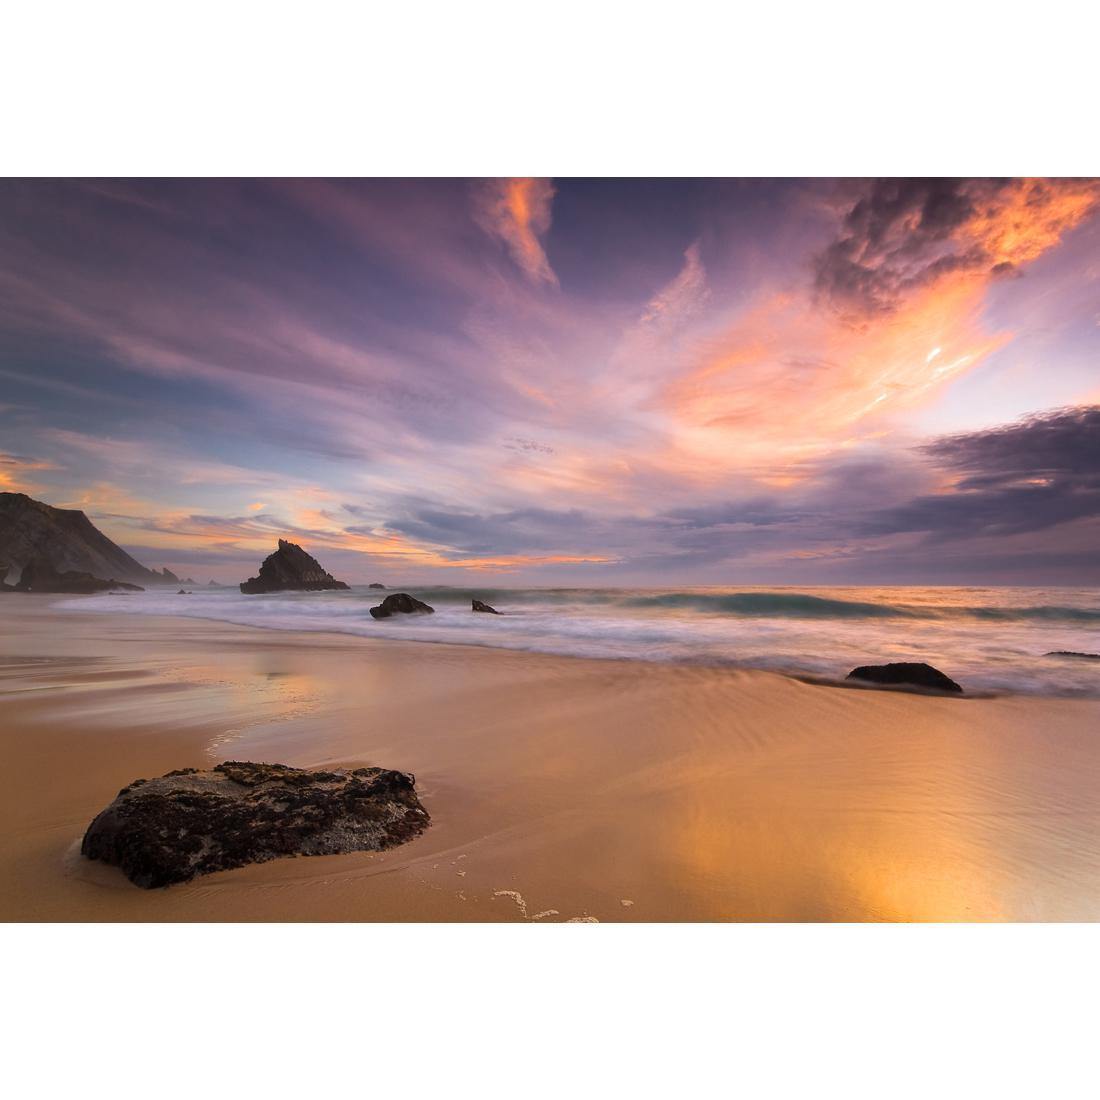 Beach Sunset - wallart-australia - Canvas